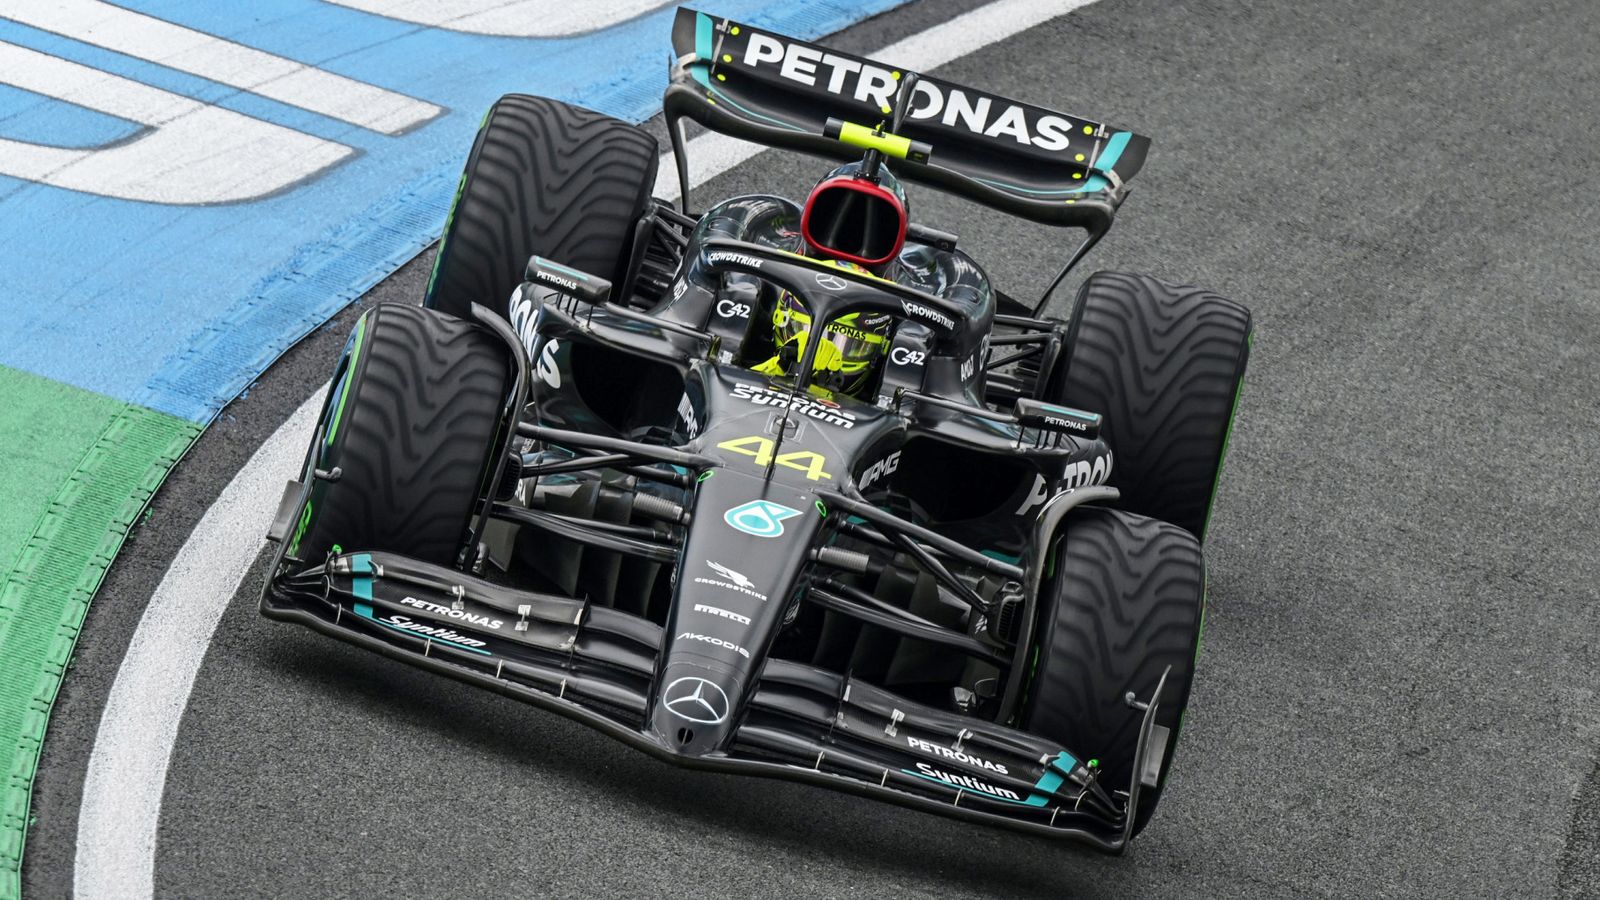 Nederlandse Grand Prix: Mercedes herziet besluitvormingsproces nadat Lewis Hamilton en George Russell in de pits stoppen |  Formule 1 nieuws